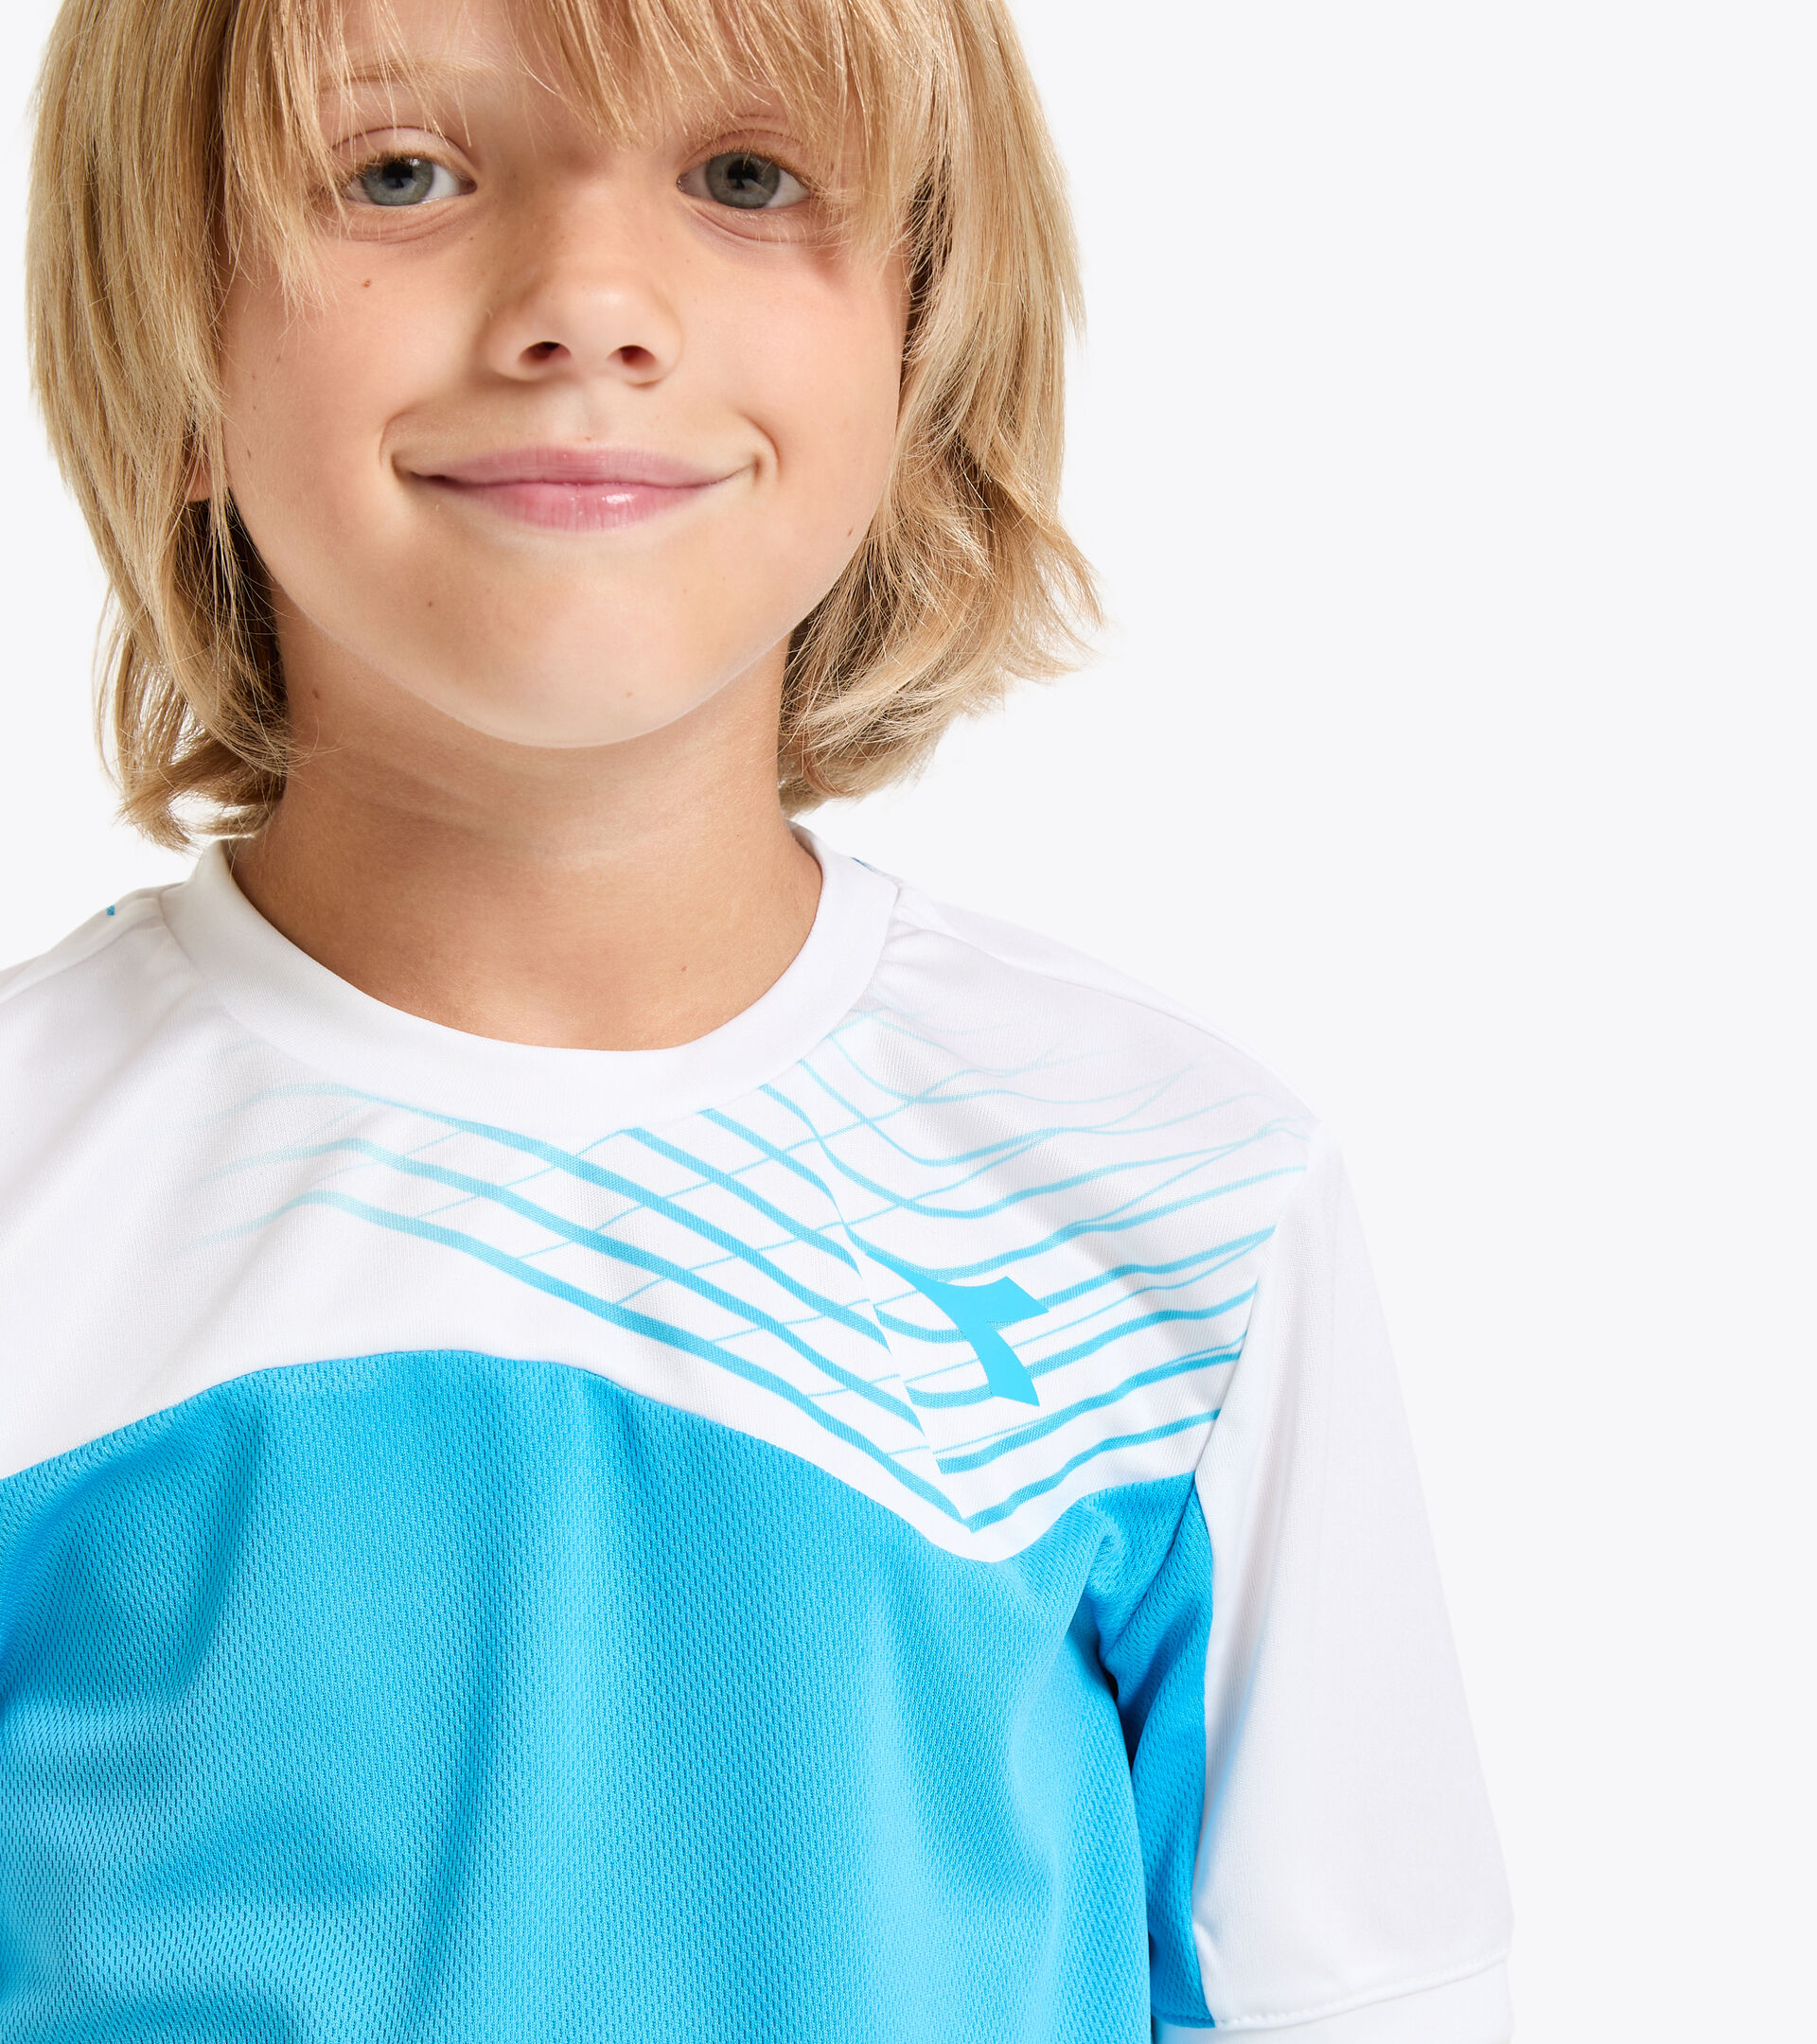 Camiseta de tenis - Junior J. T-SHIRT COURT AZUL REAL FLUO - Diadora